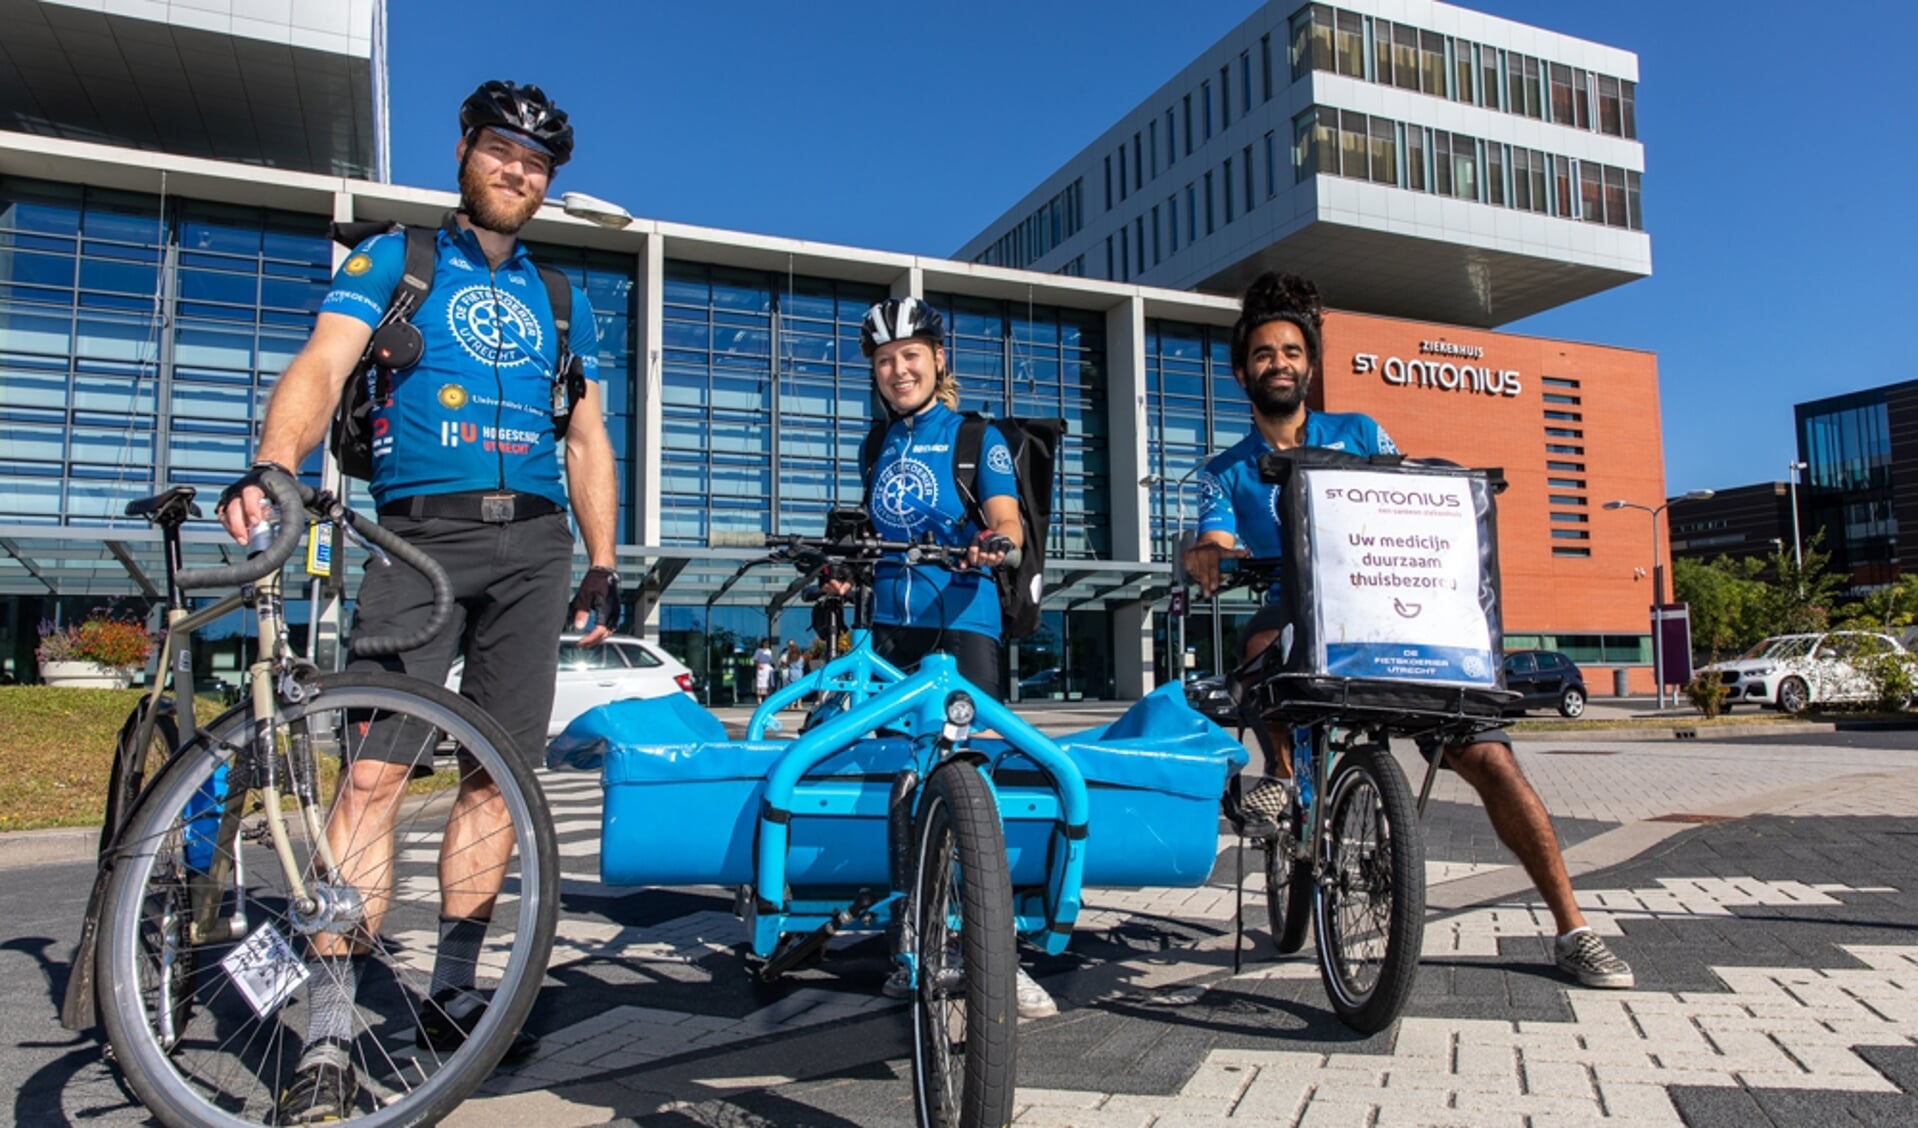 • Binnen de stad Utrecht gebeurt dat zelfs met fietskoeriers.